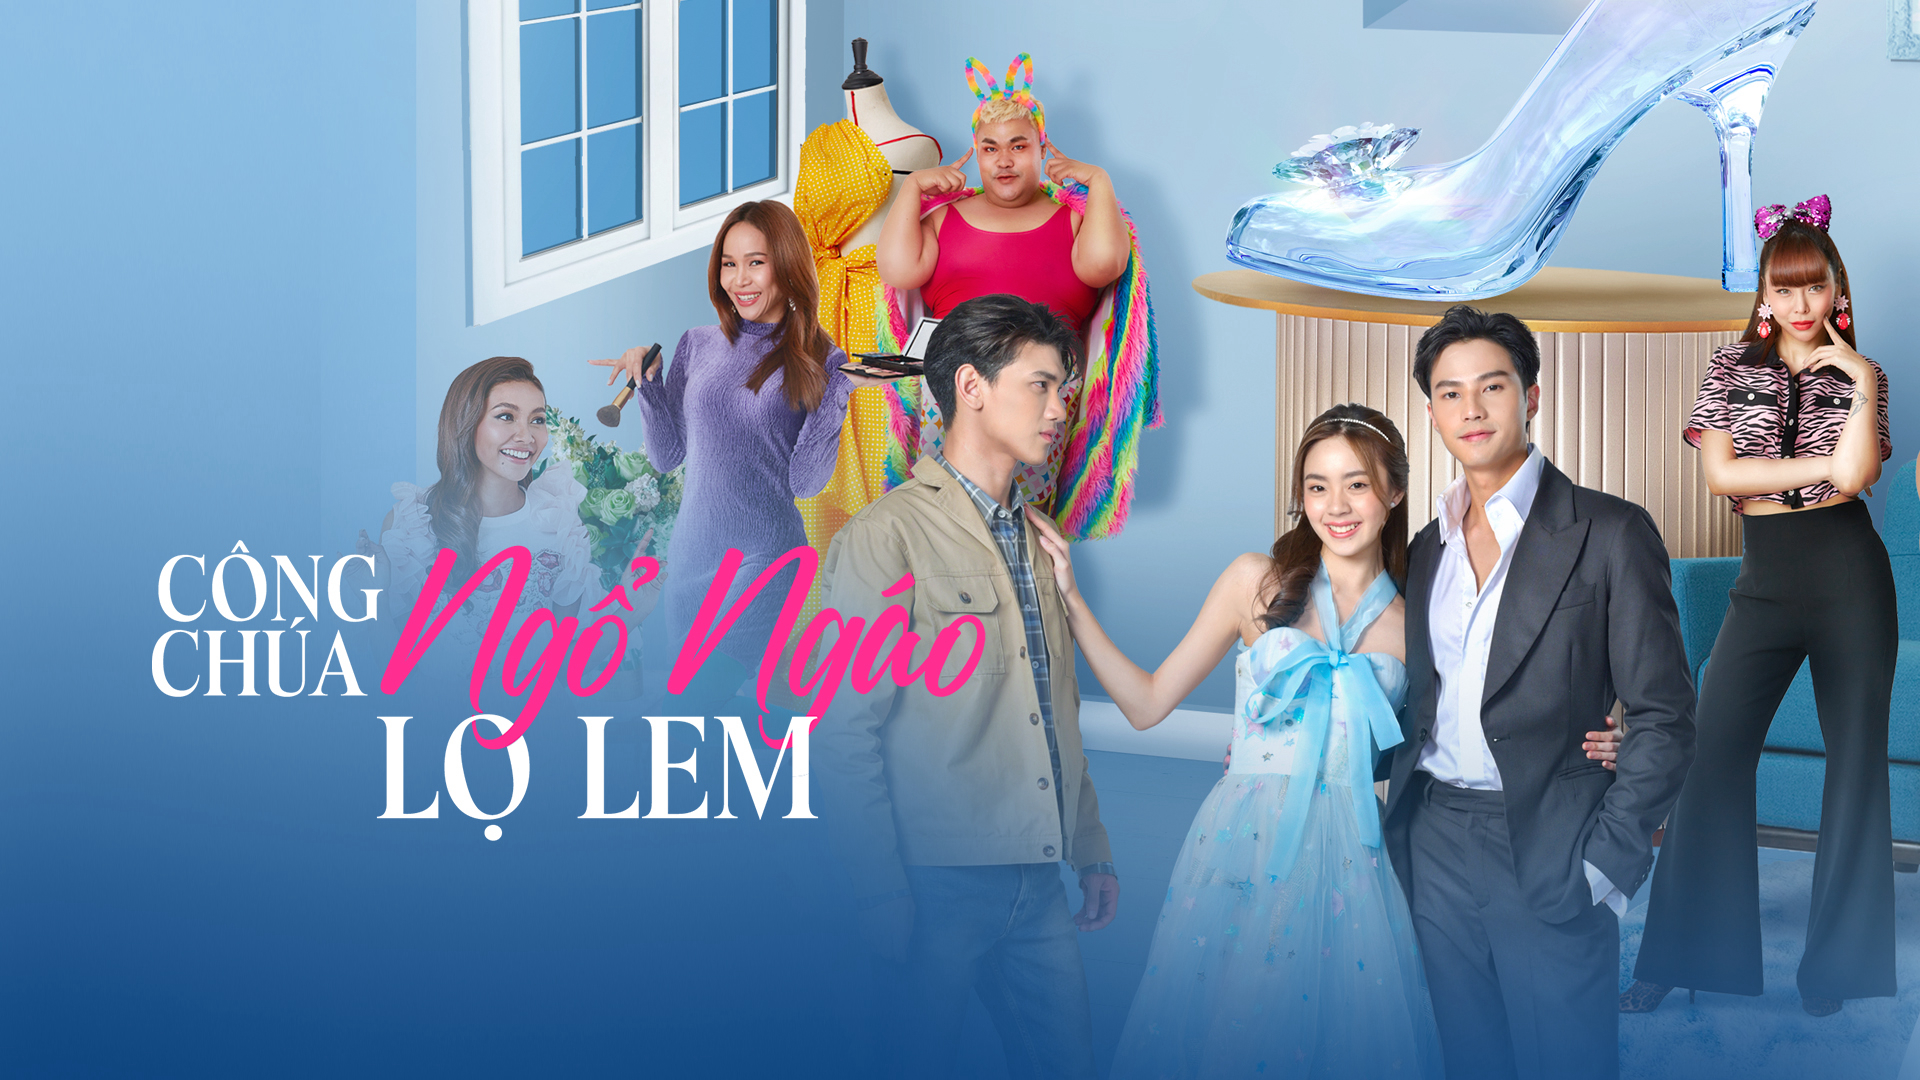 Xem Phim Công Chúa Ngổ Ngáo: Lọ Lem (My Sassy Princess: Cinderella)